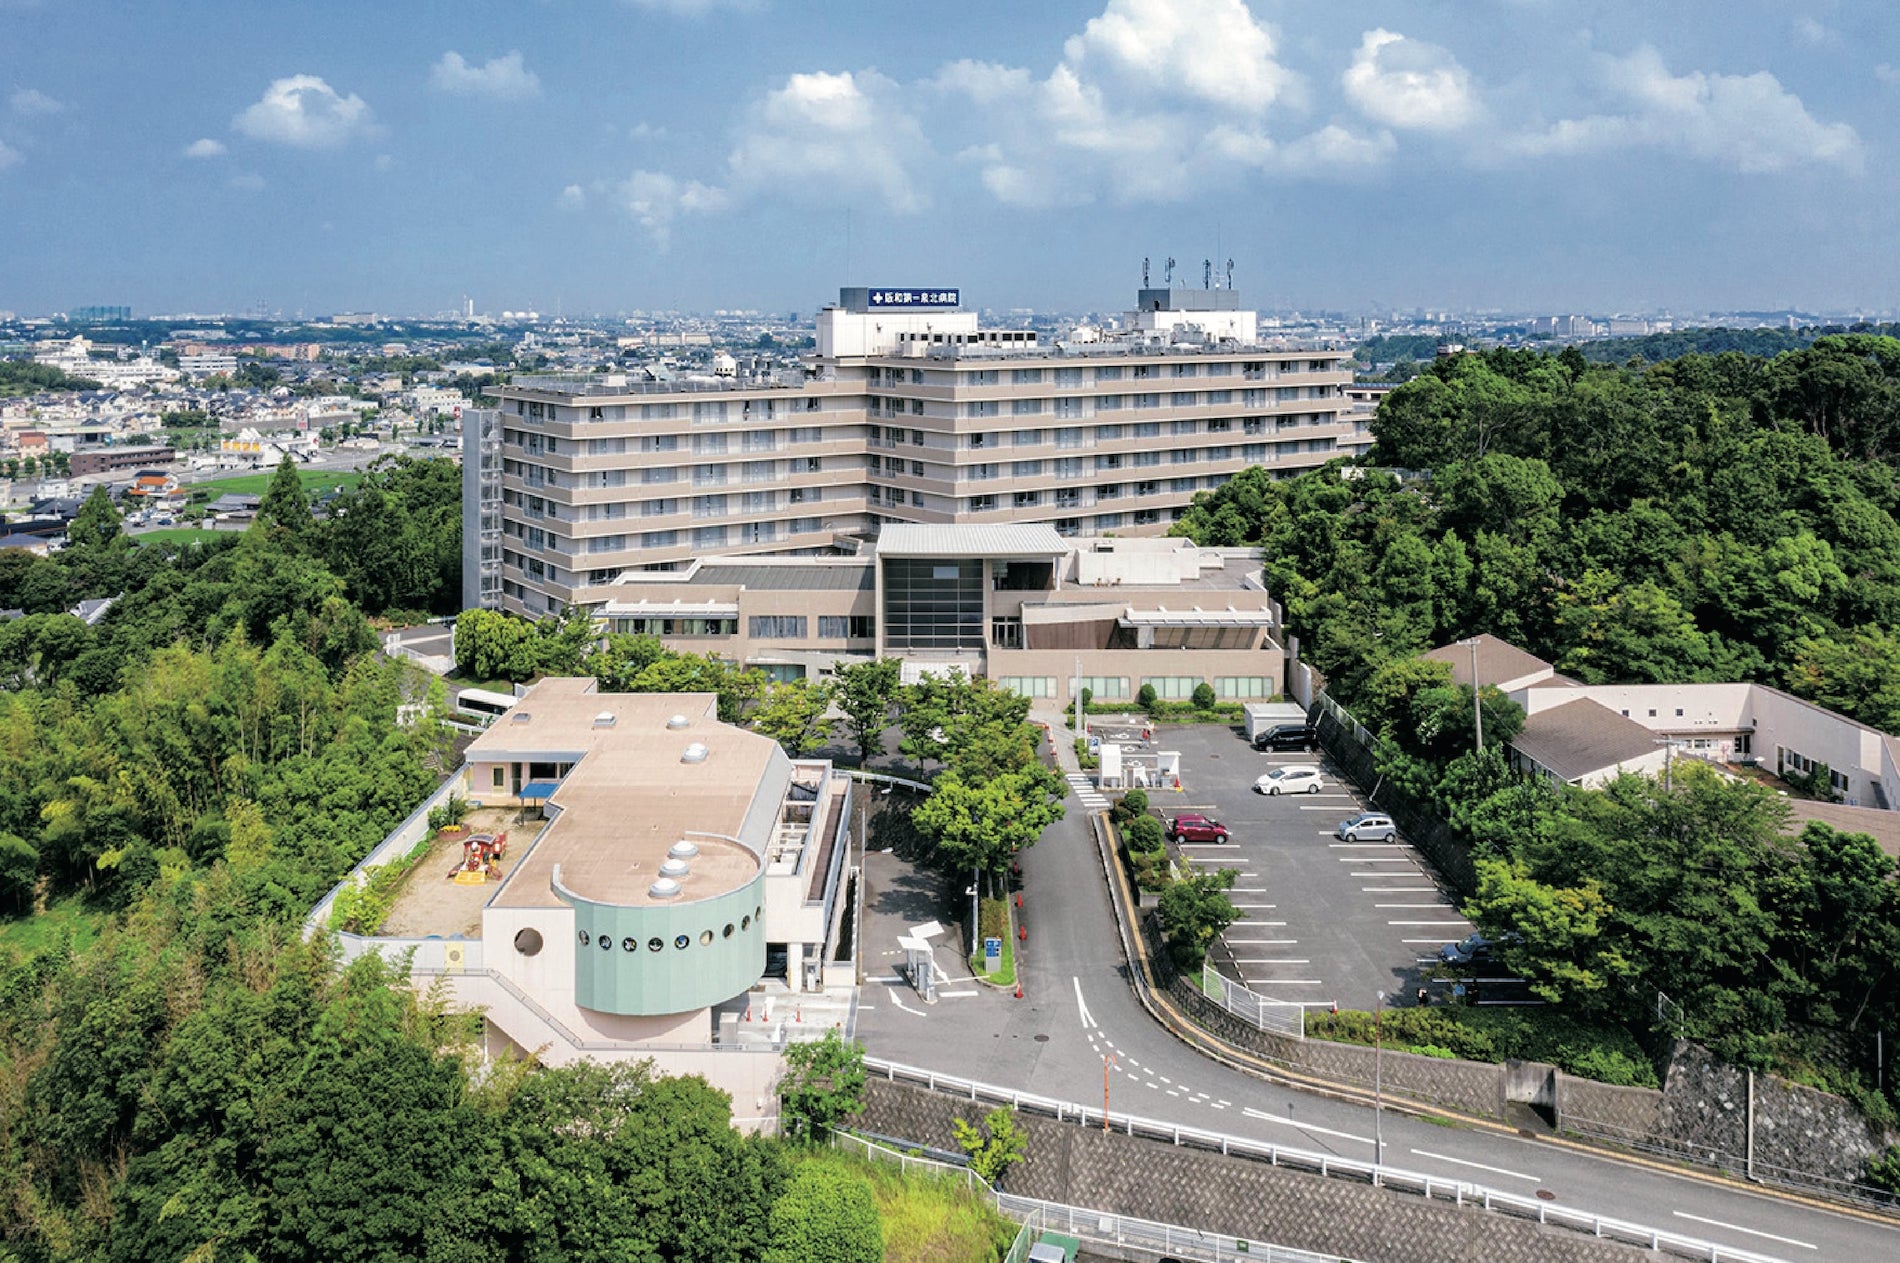 阪和第一泉北病院